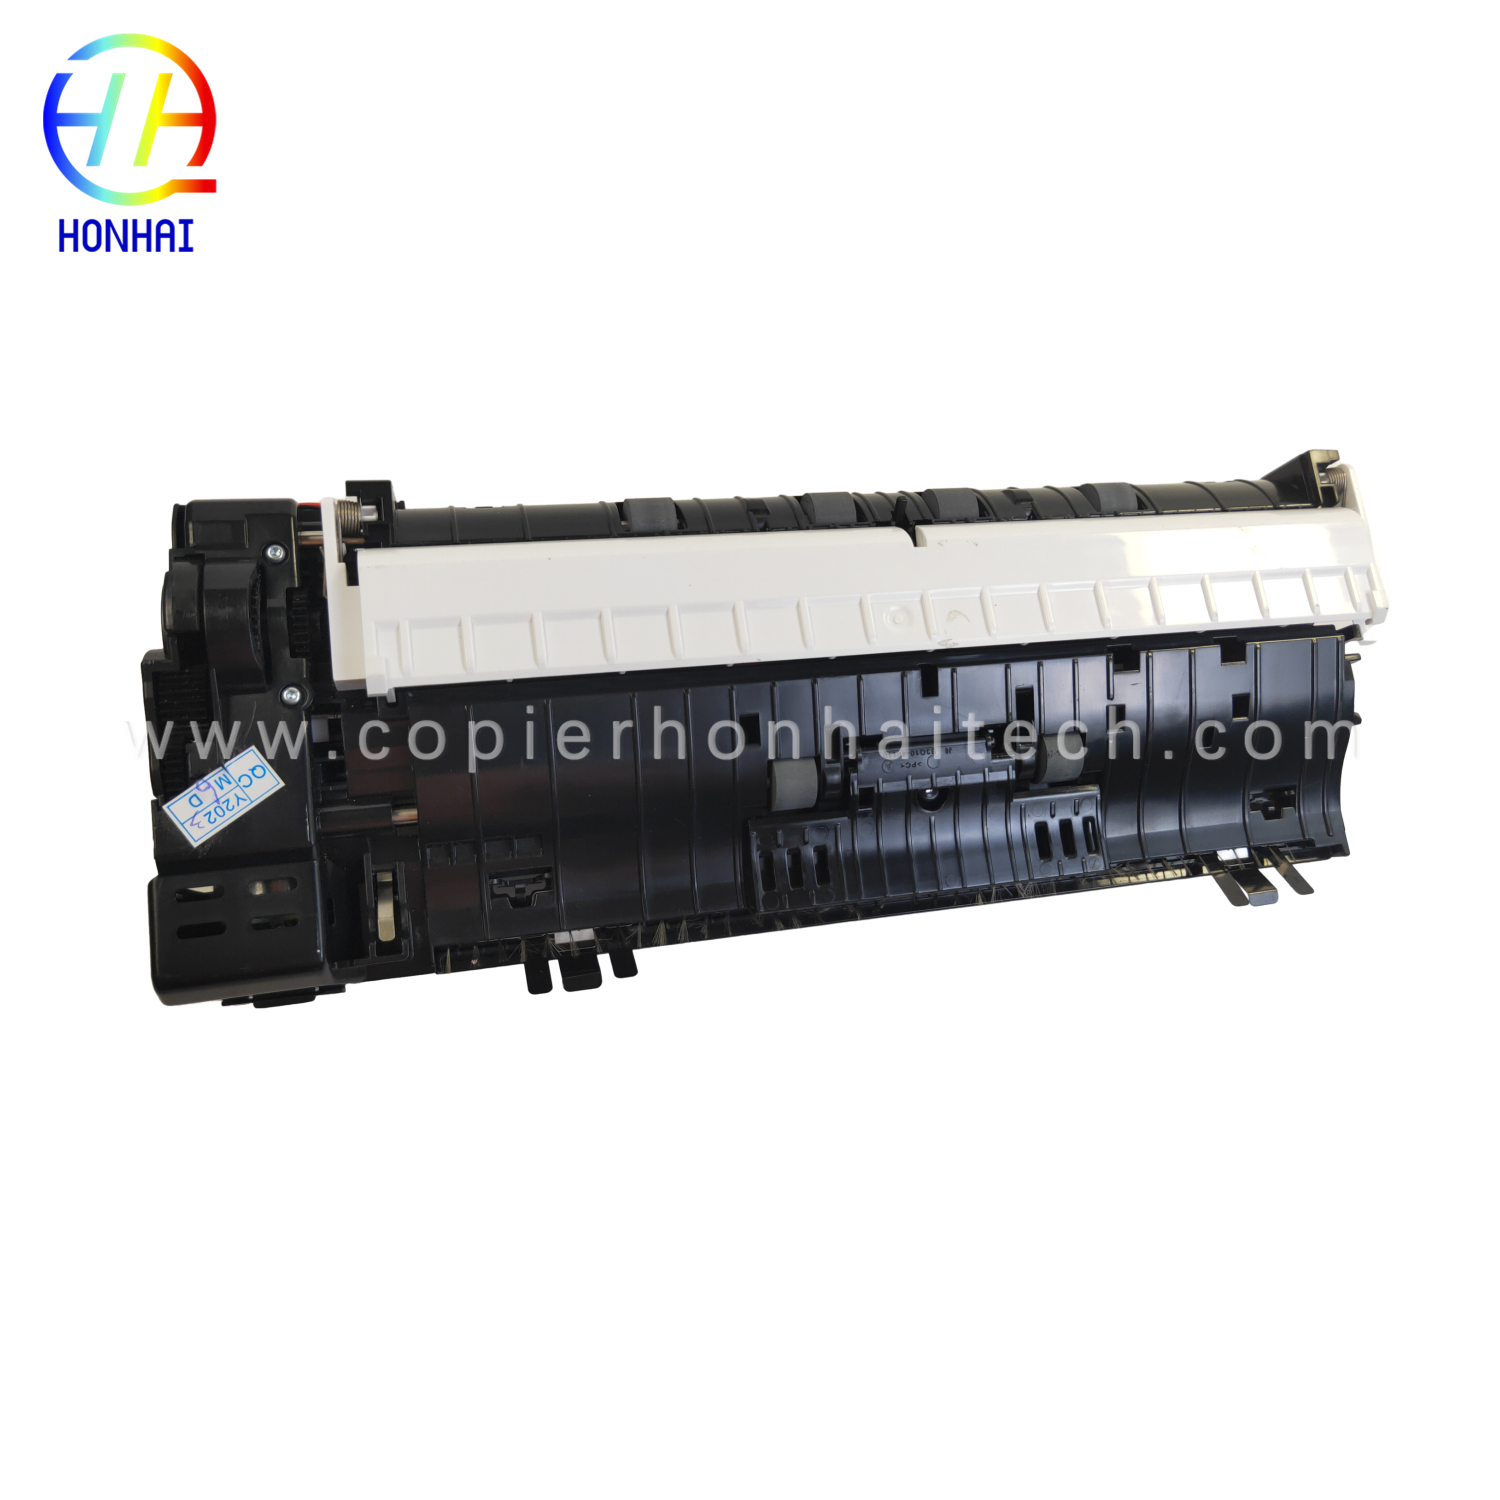 https://www.copierhonhaitech.com/origen-adf-assembly-for-hp-color-laserjet-m277-product/